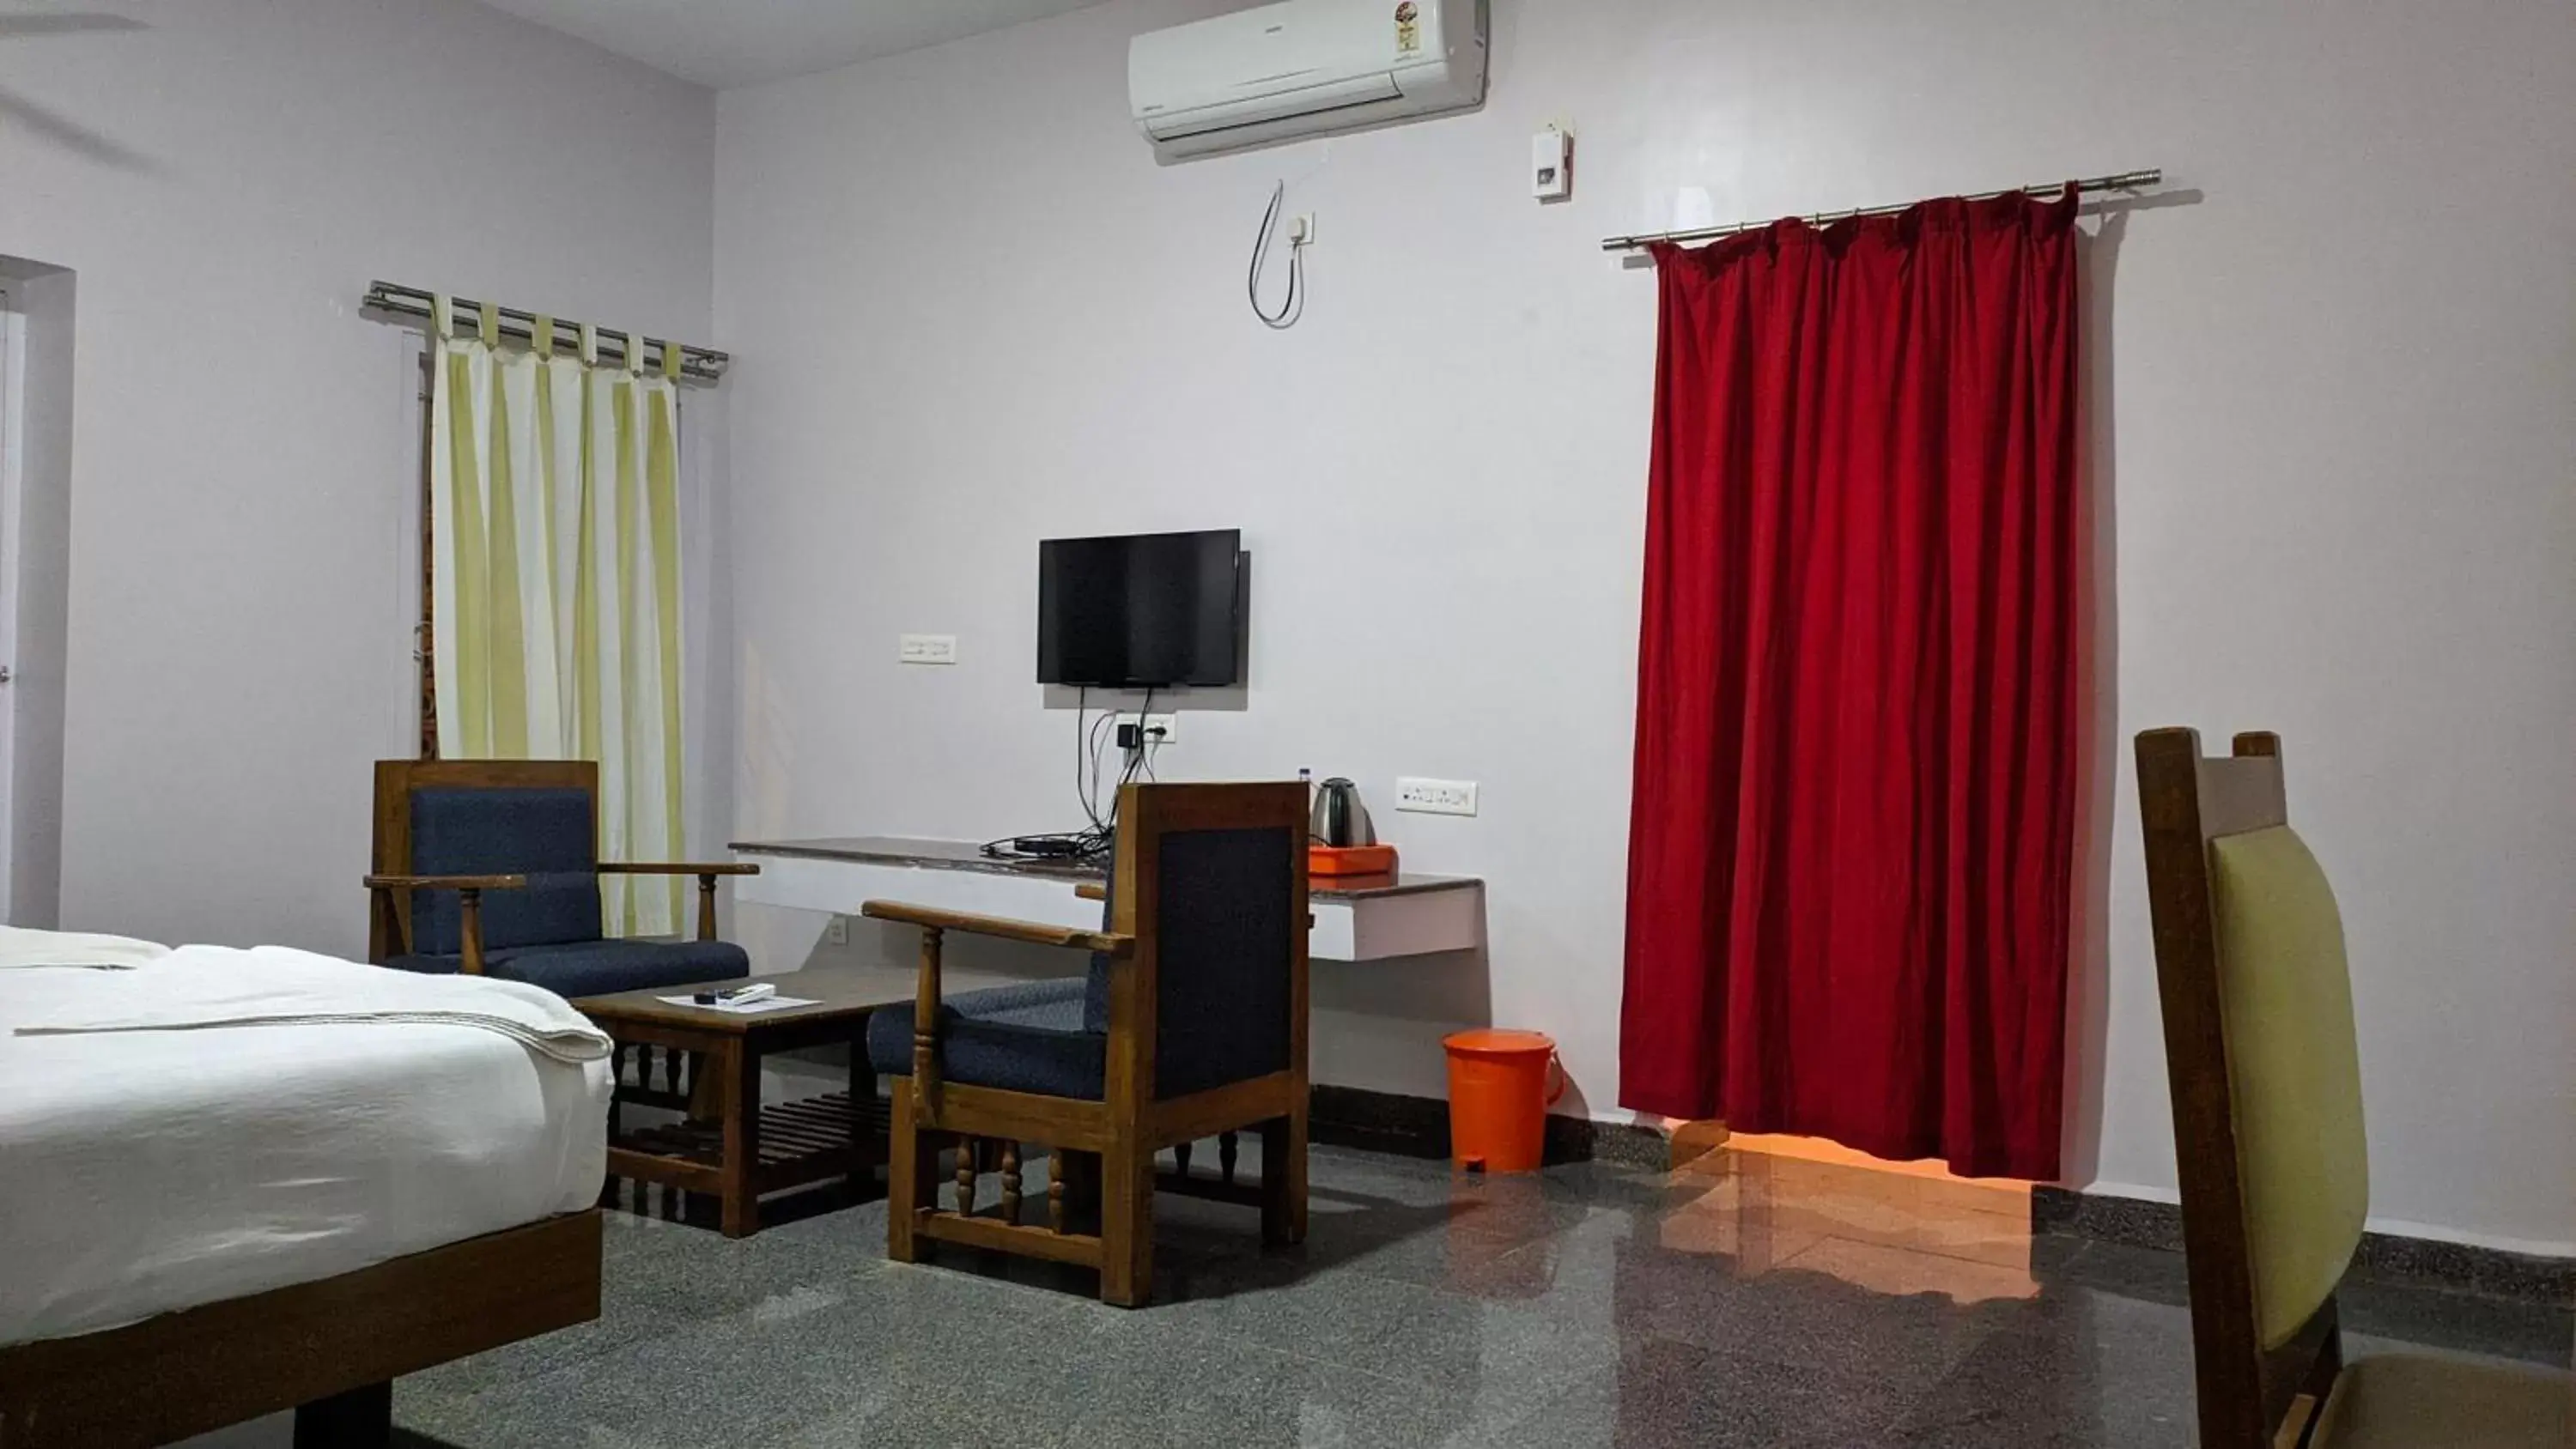 Bedroom, TV/Entertainment Center in Kanthi Resorts Badami